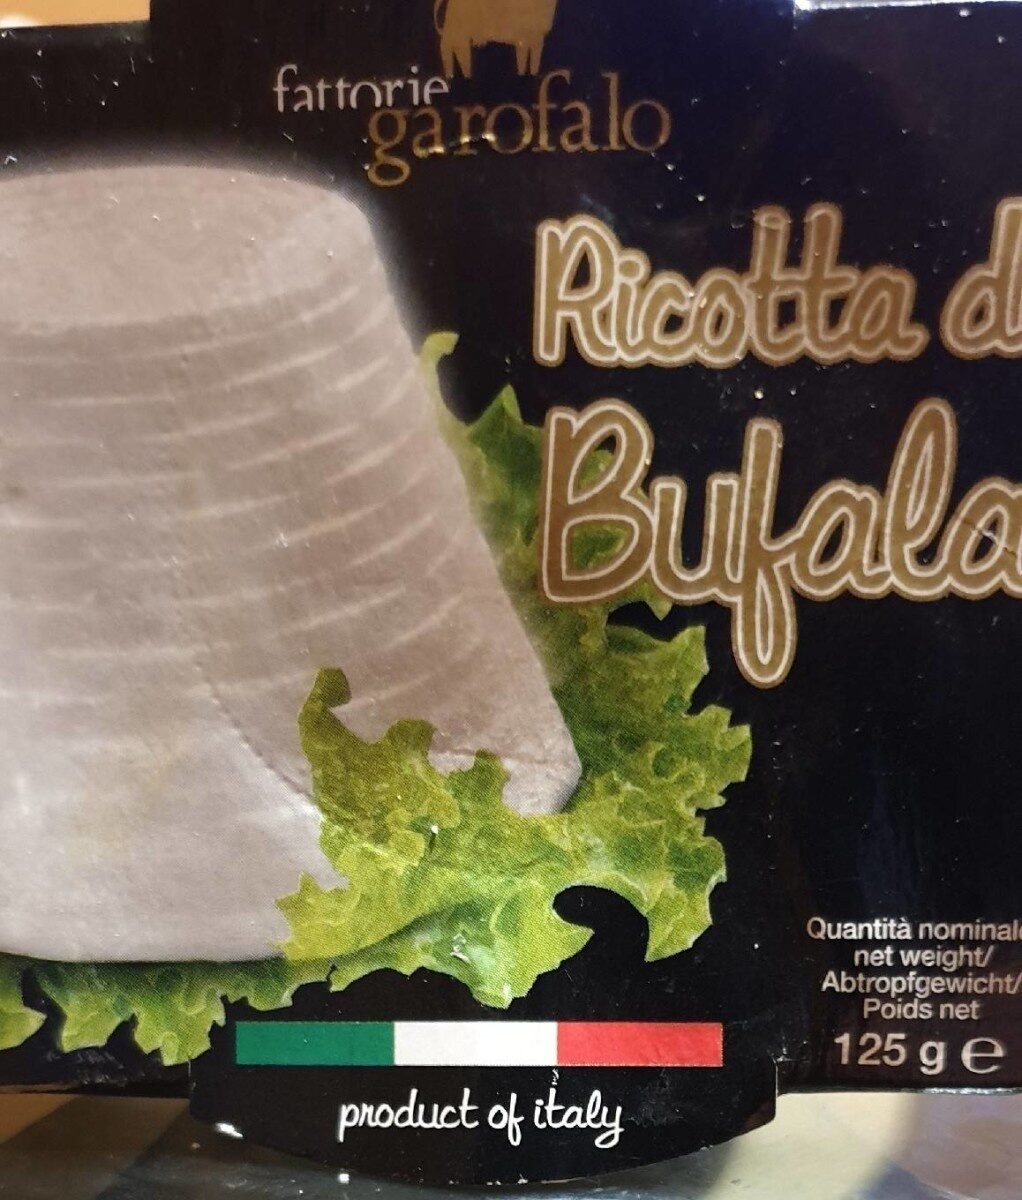 Ricotta Di Bufala 'Buffalo Milk Ricotta' - Información nutricional - fr